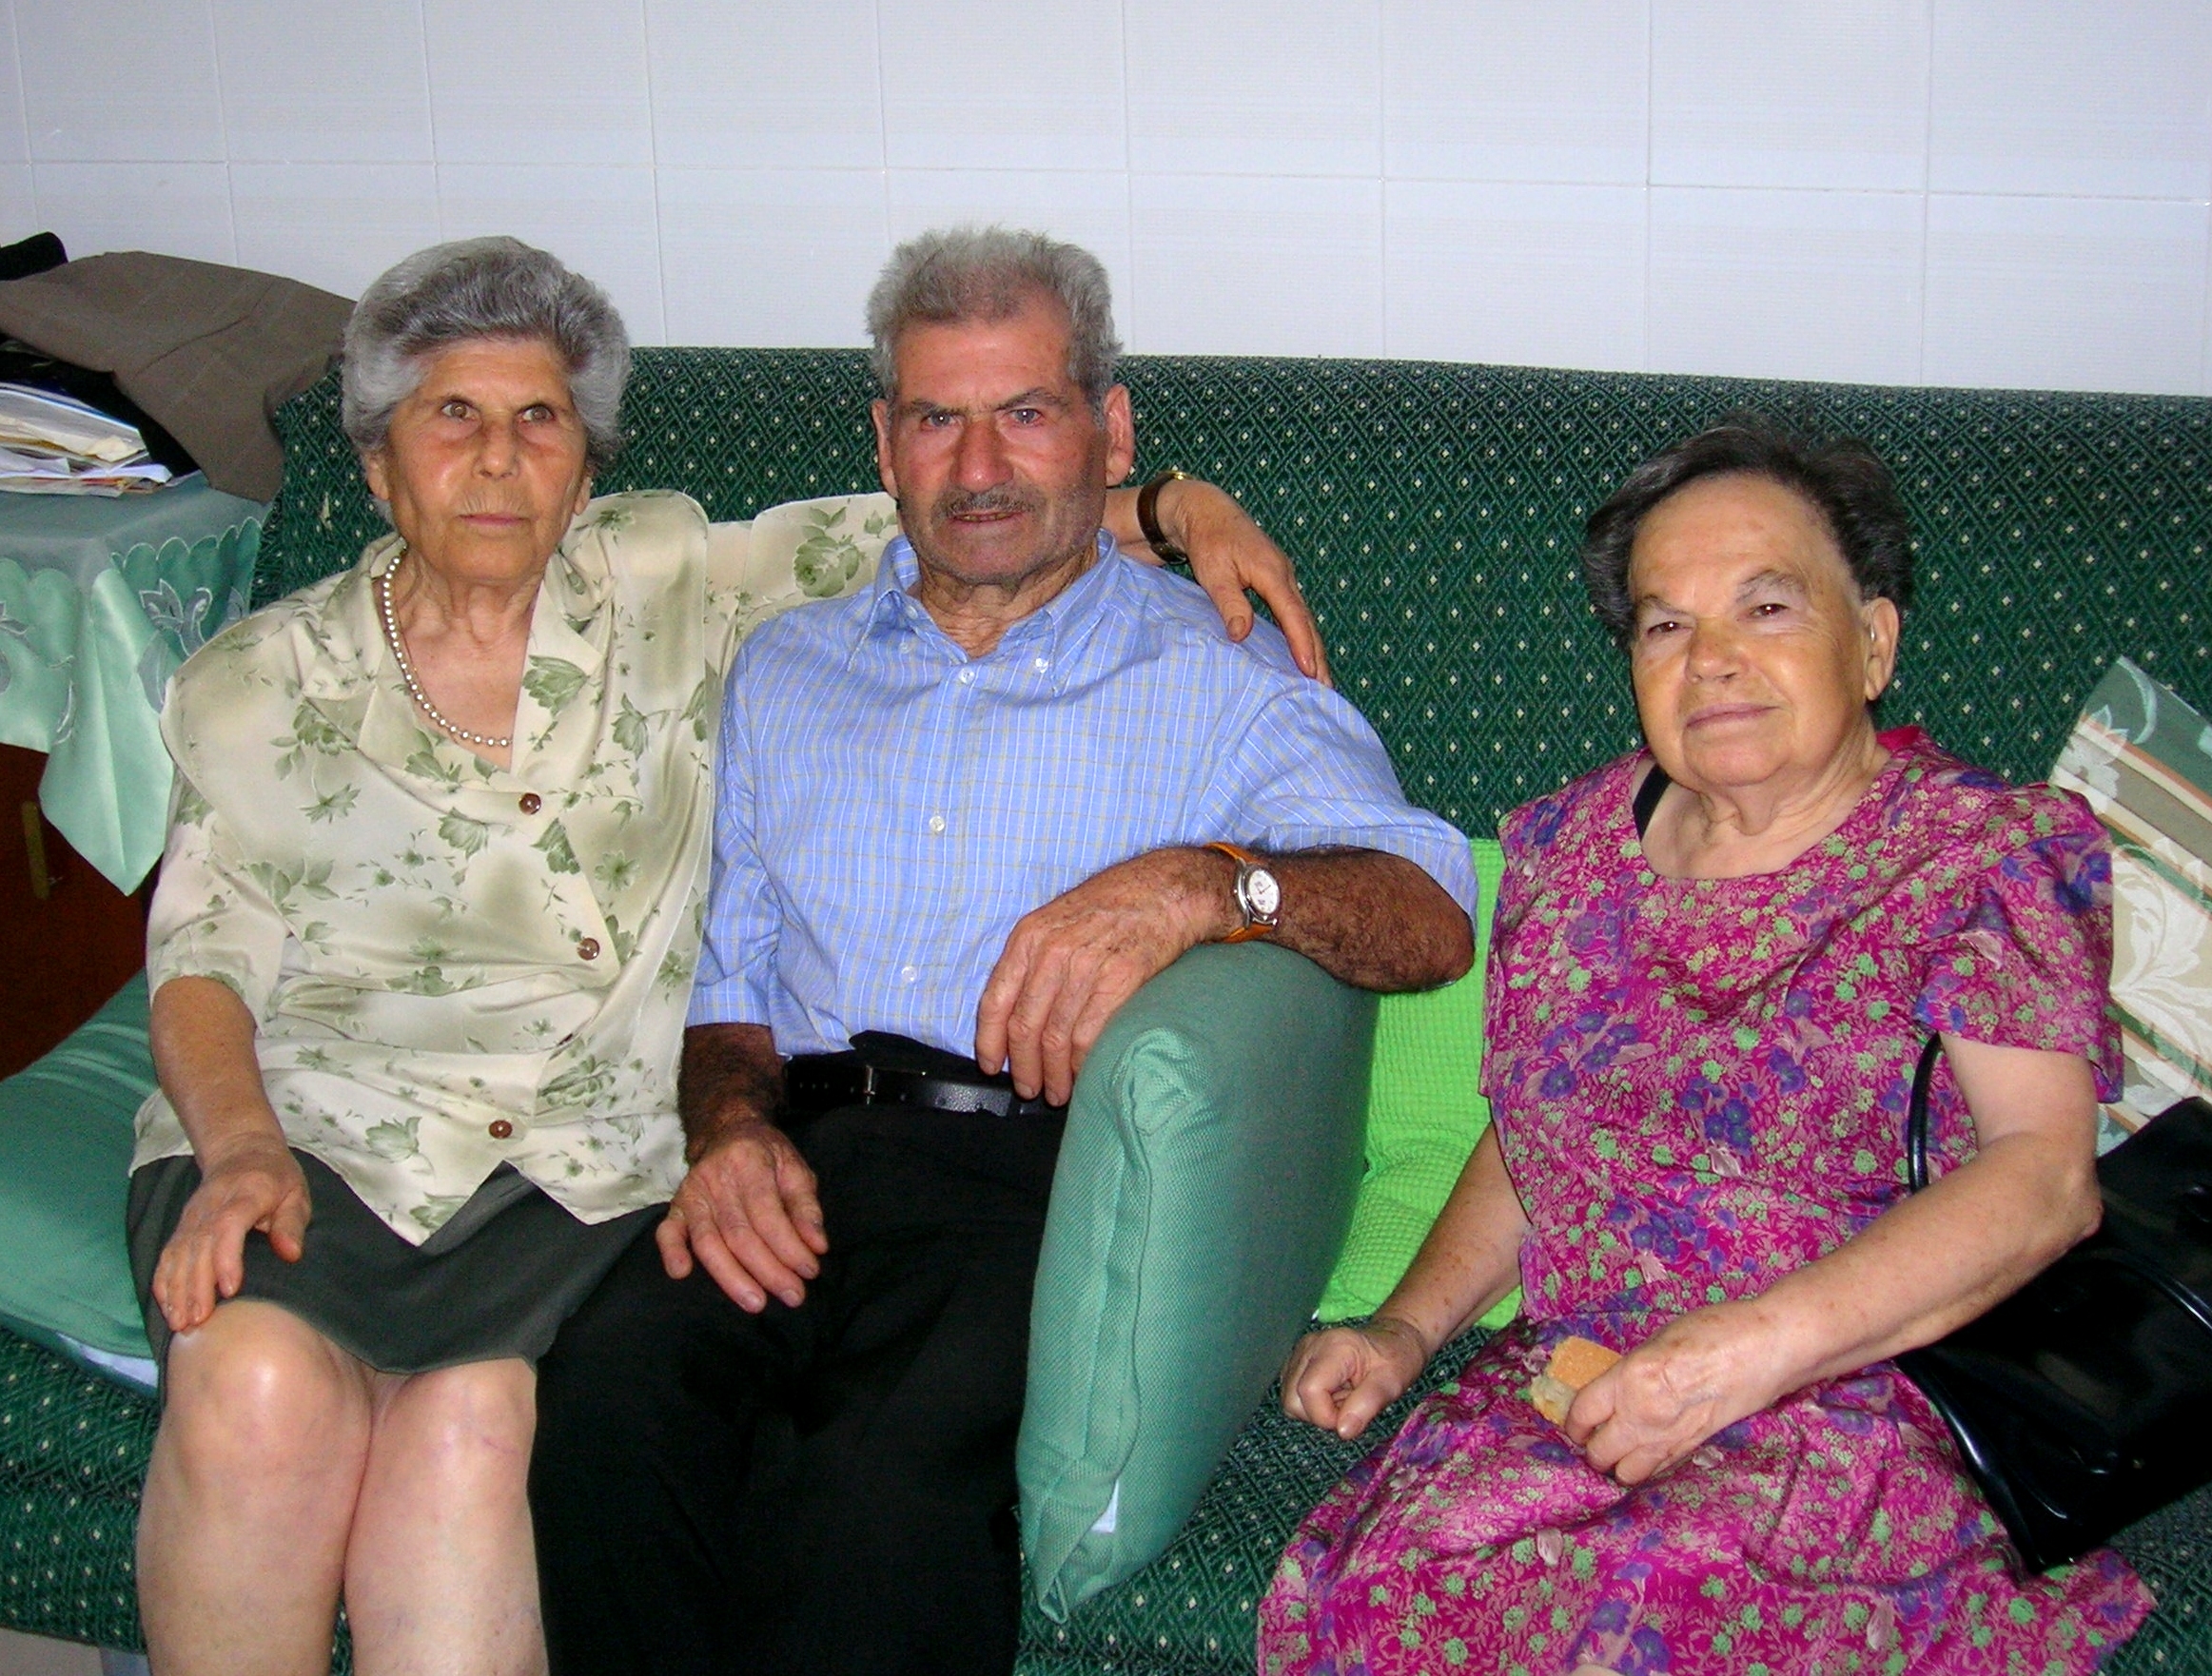 23 agosto 2005 - Randazzo (CT) : Romano Rosa, Romano Nino, e Romano Maria. 